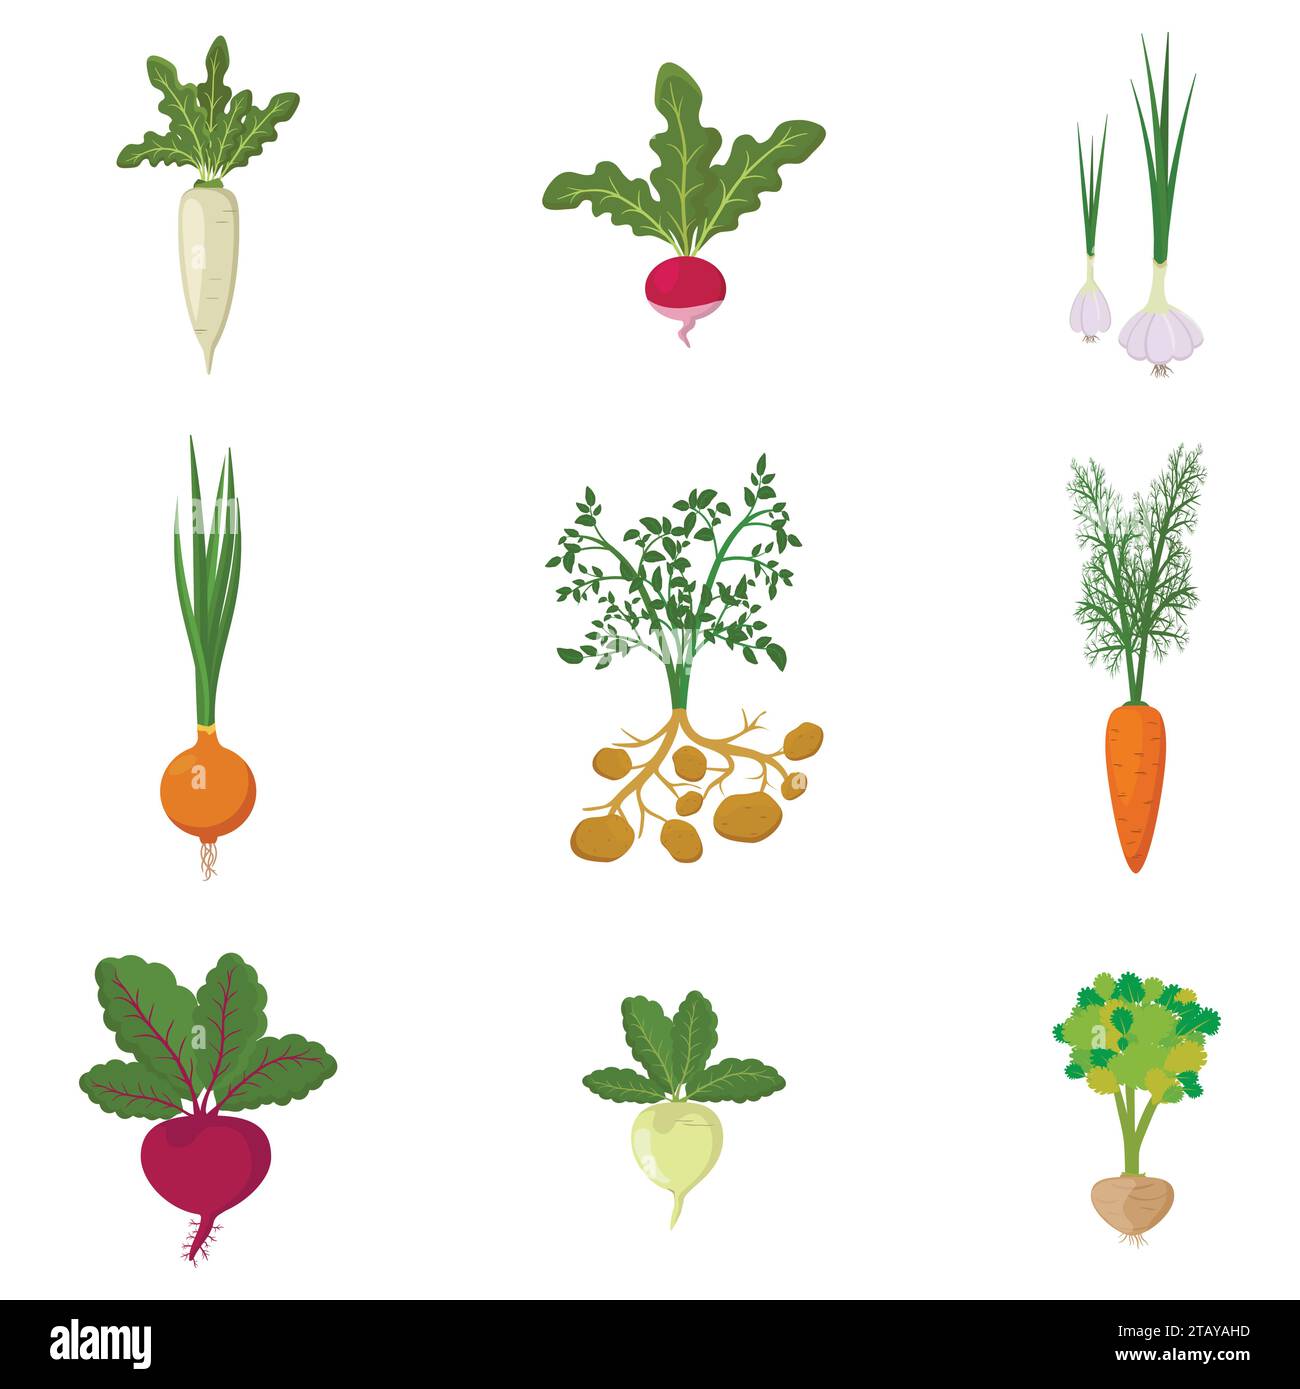 Ensemble de potager bio frais isolé sur fond blanc. Légumes racines de différentes sortes - carotte, oignon, pommes de terre, radis, daikon, betterave Illustration de Vecteur